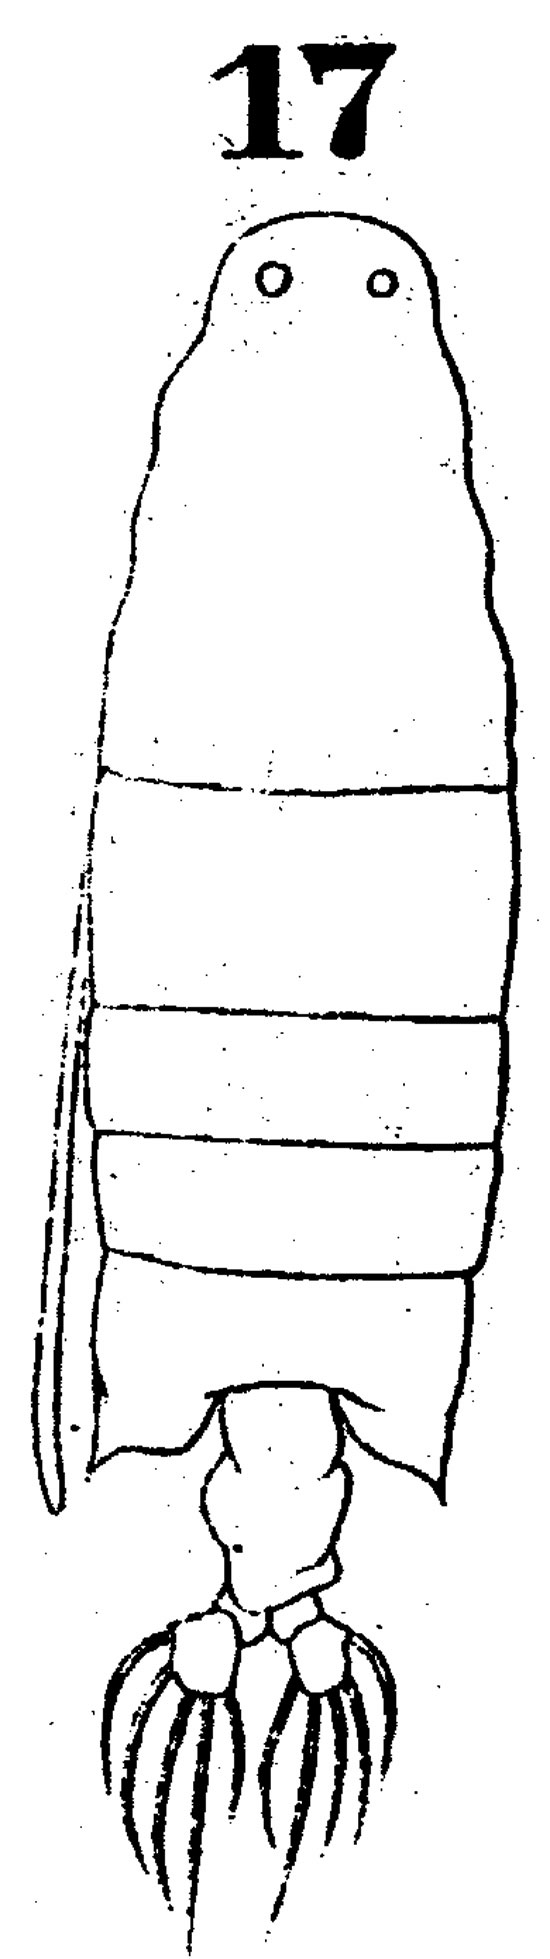 Espèce Labidocera orsinii - Planche 1 de figures morphologiques